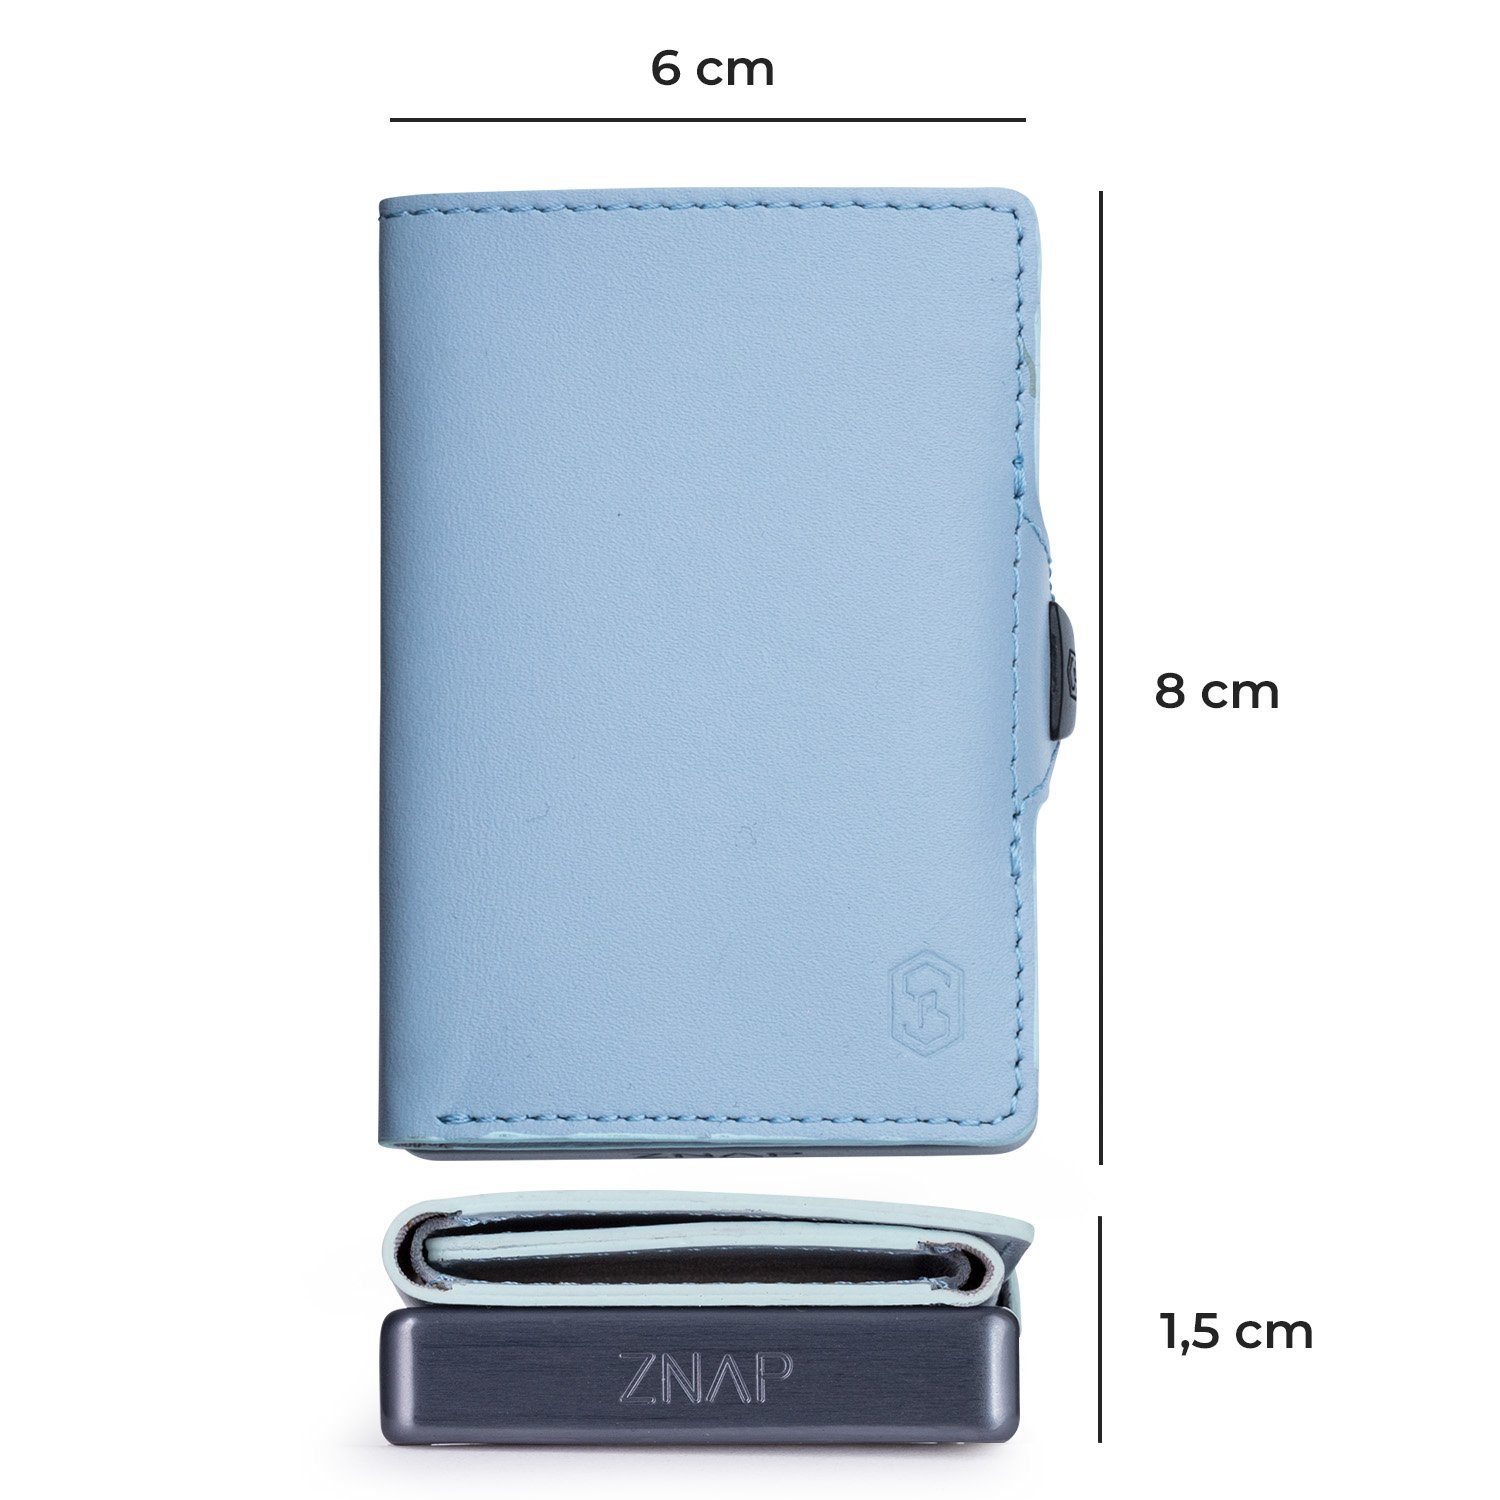 Slimpuro Geldbörse ZNAP Wallet Portemonnaie (Set), Münzen Bankkarten Pastellblau Herren RFID-Schutz Geldscheine Damen